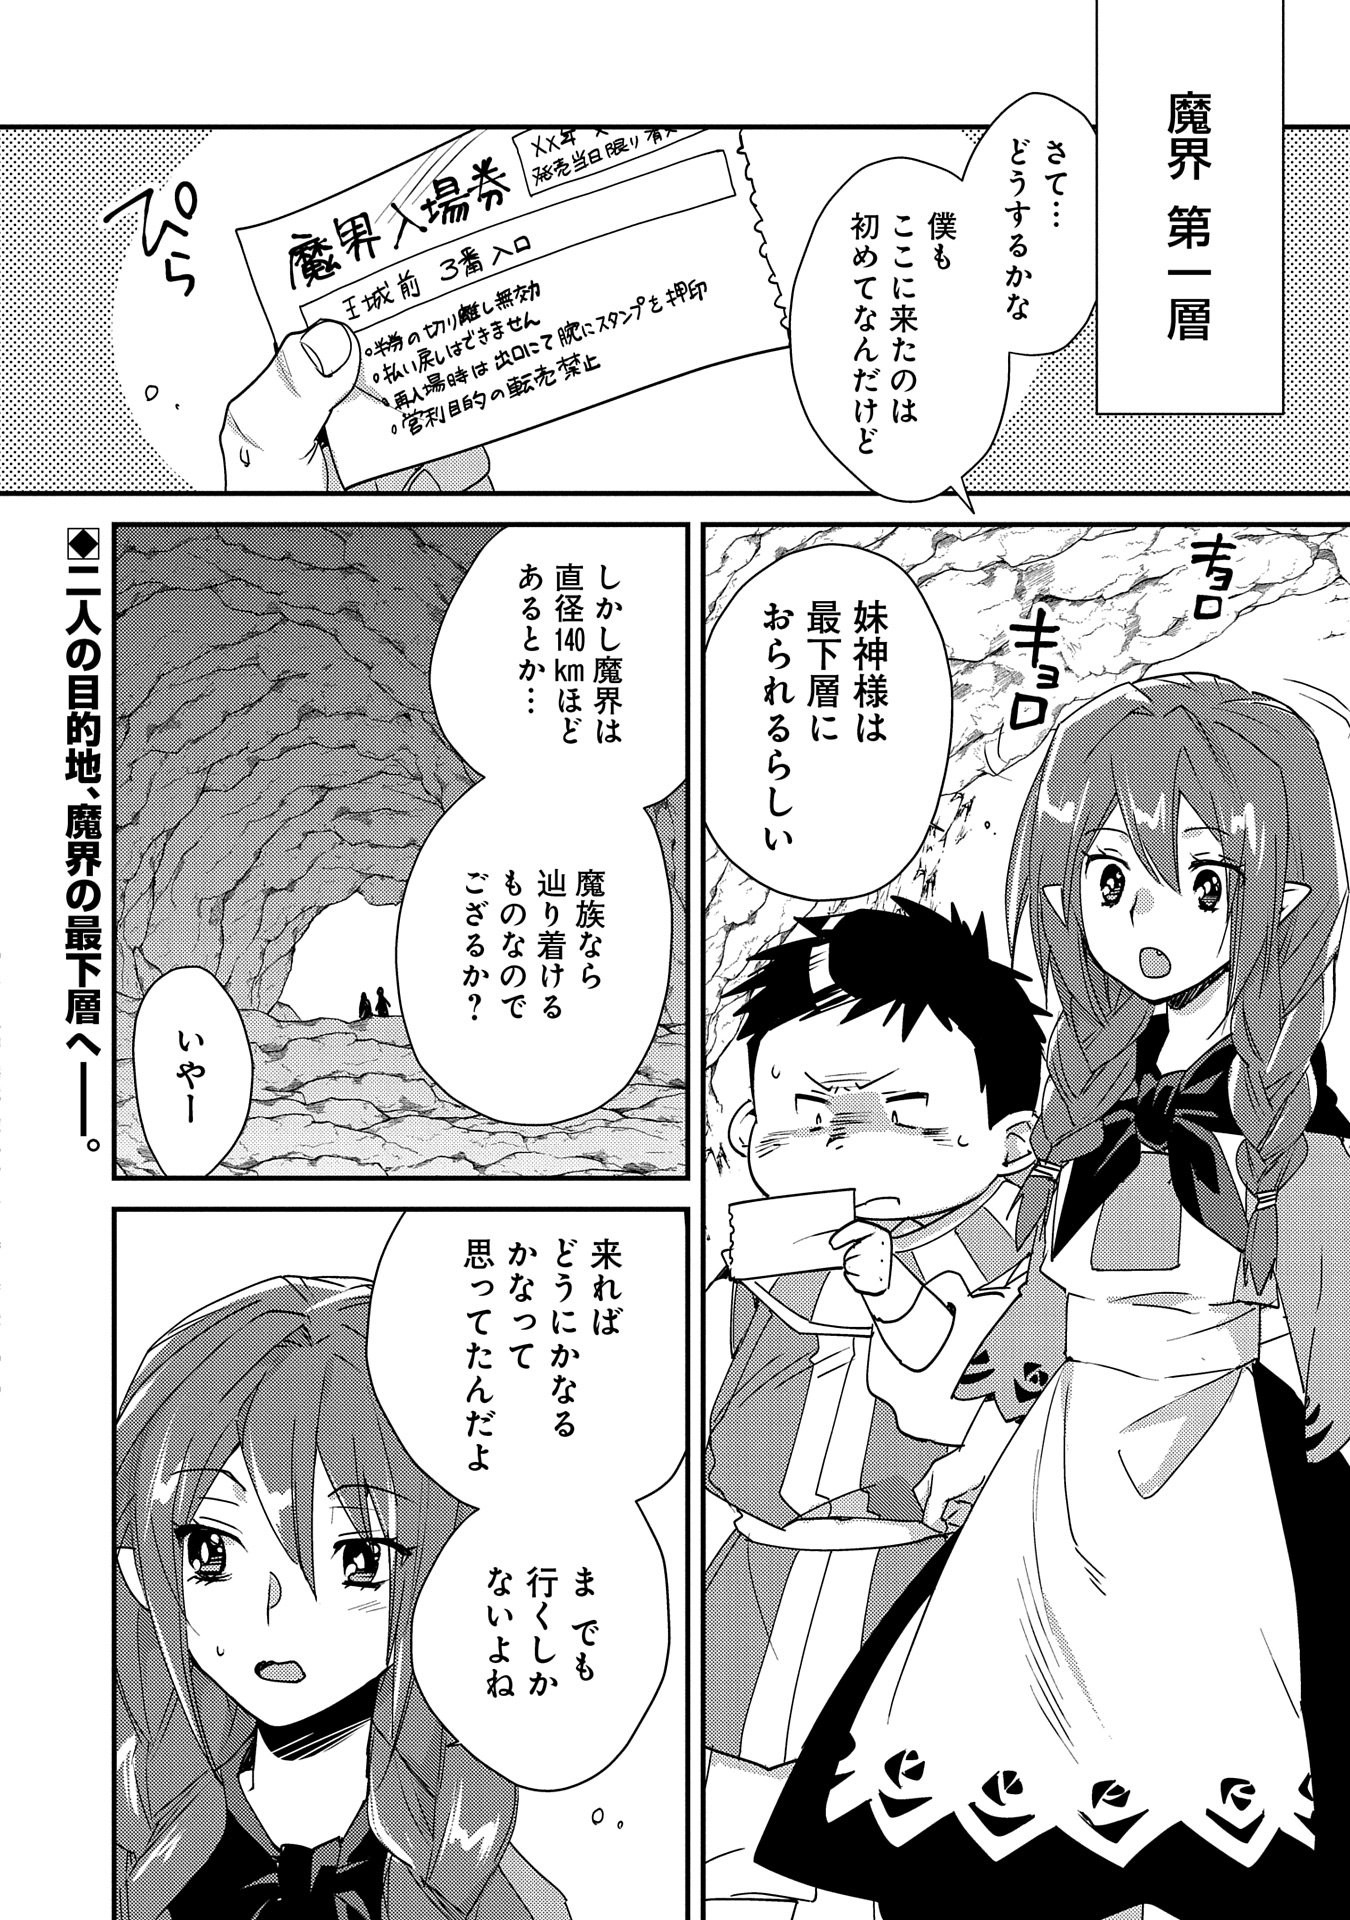 Sokushi Cheat ga Saikyou Sugite, Isekai no Yatsura ga Marude Aite ni Naranai n desu ga - Chapter 48 - Page 2